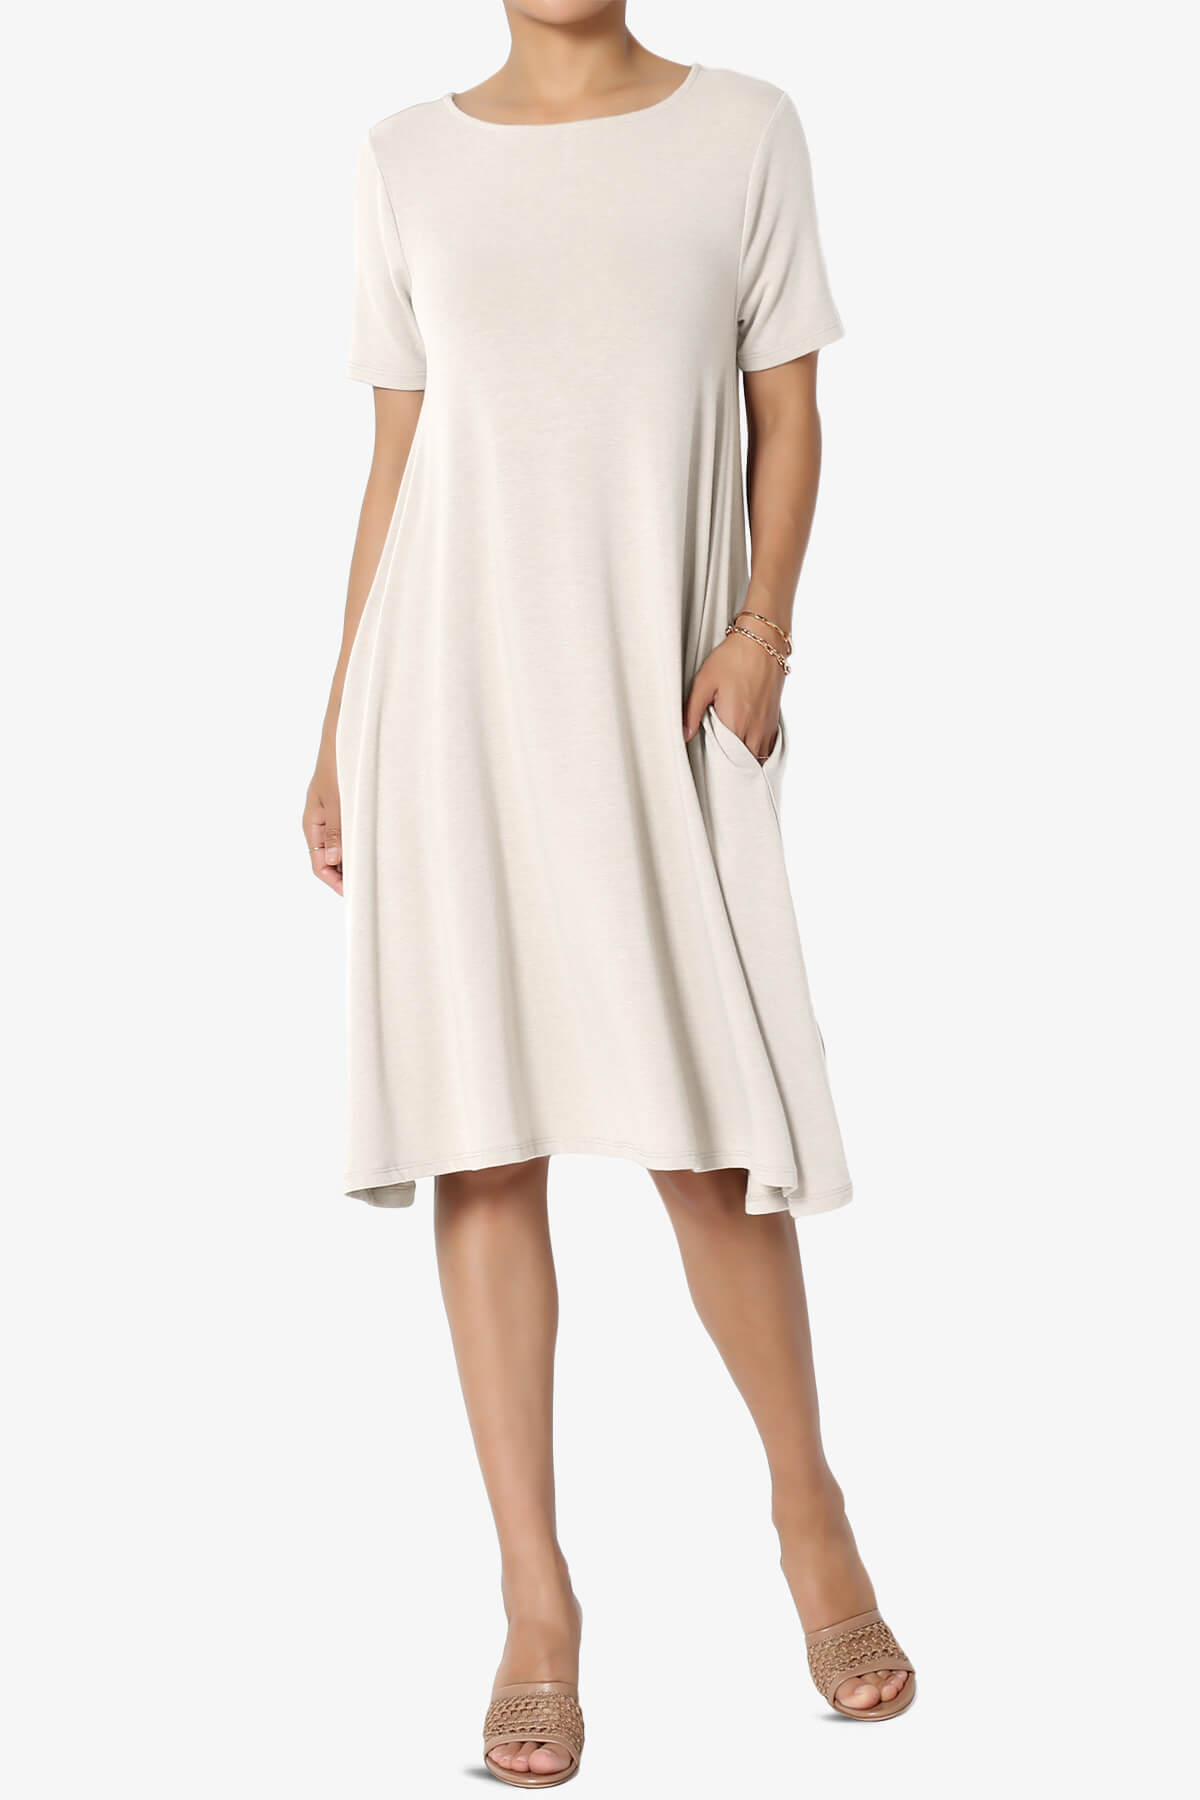 Allie Short Sleeve Jersey A-Line Dress SAND BEIGE_1